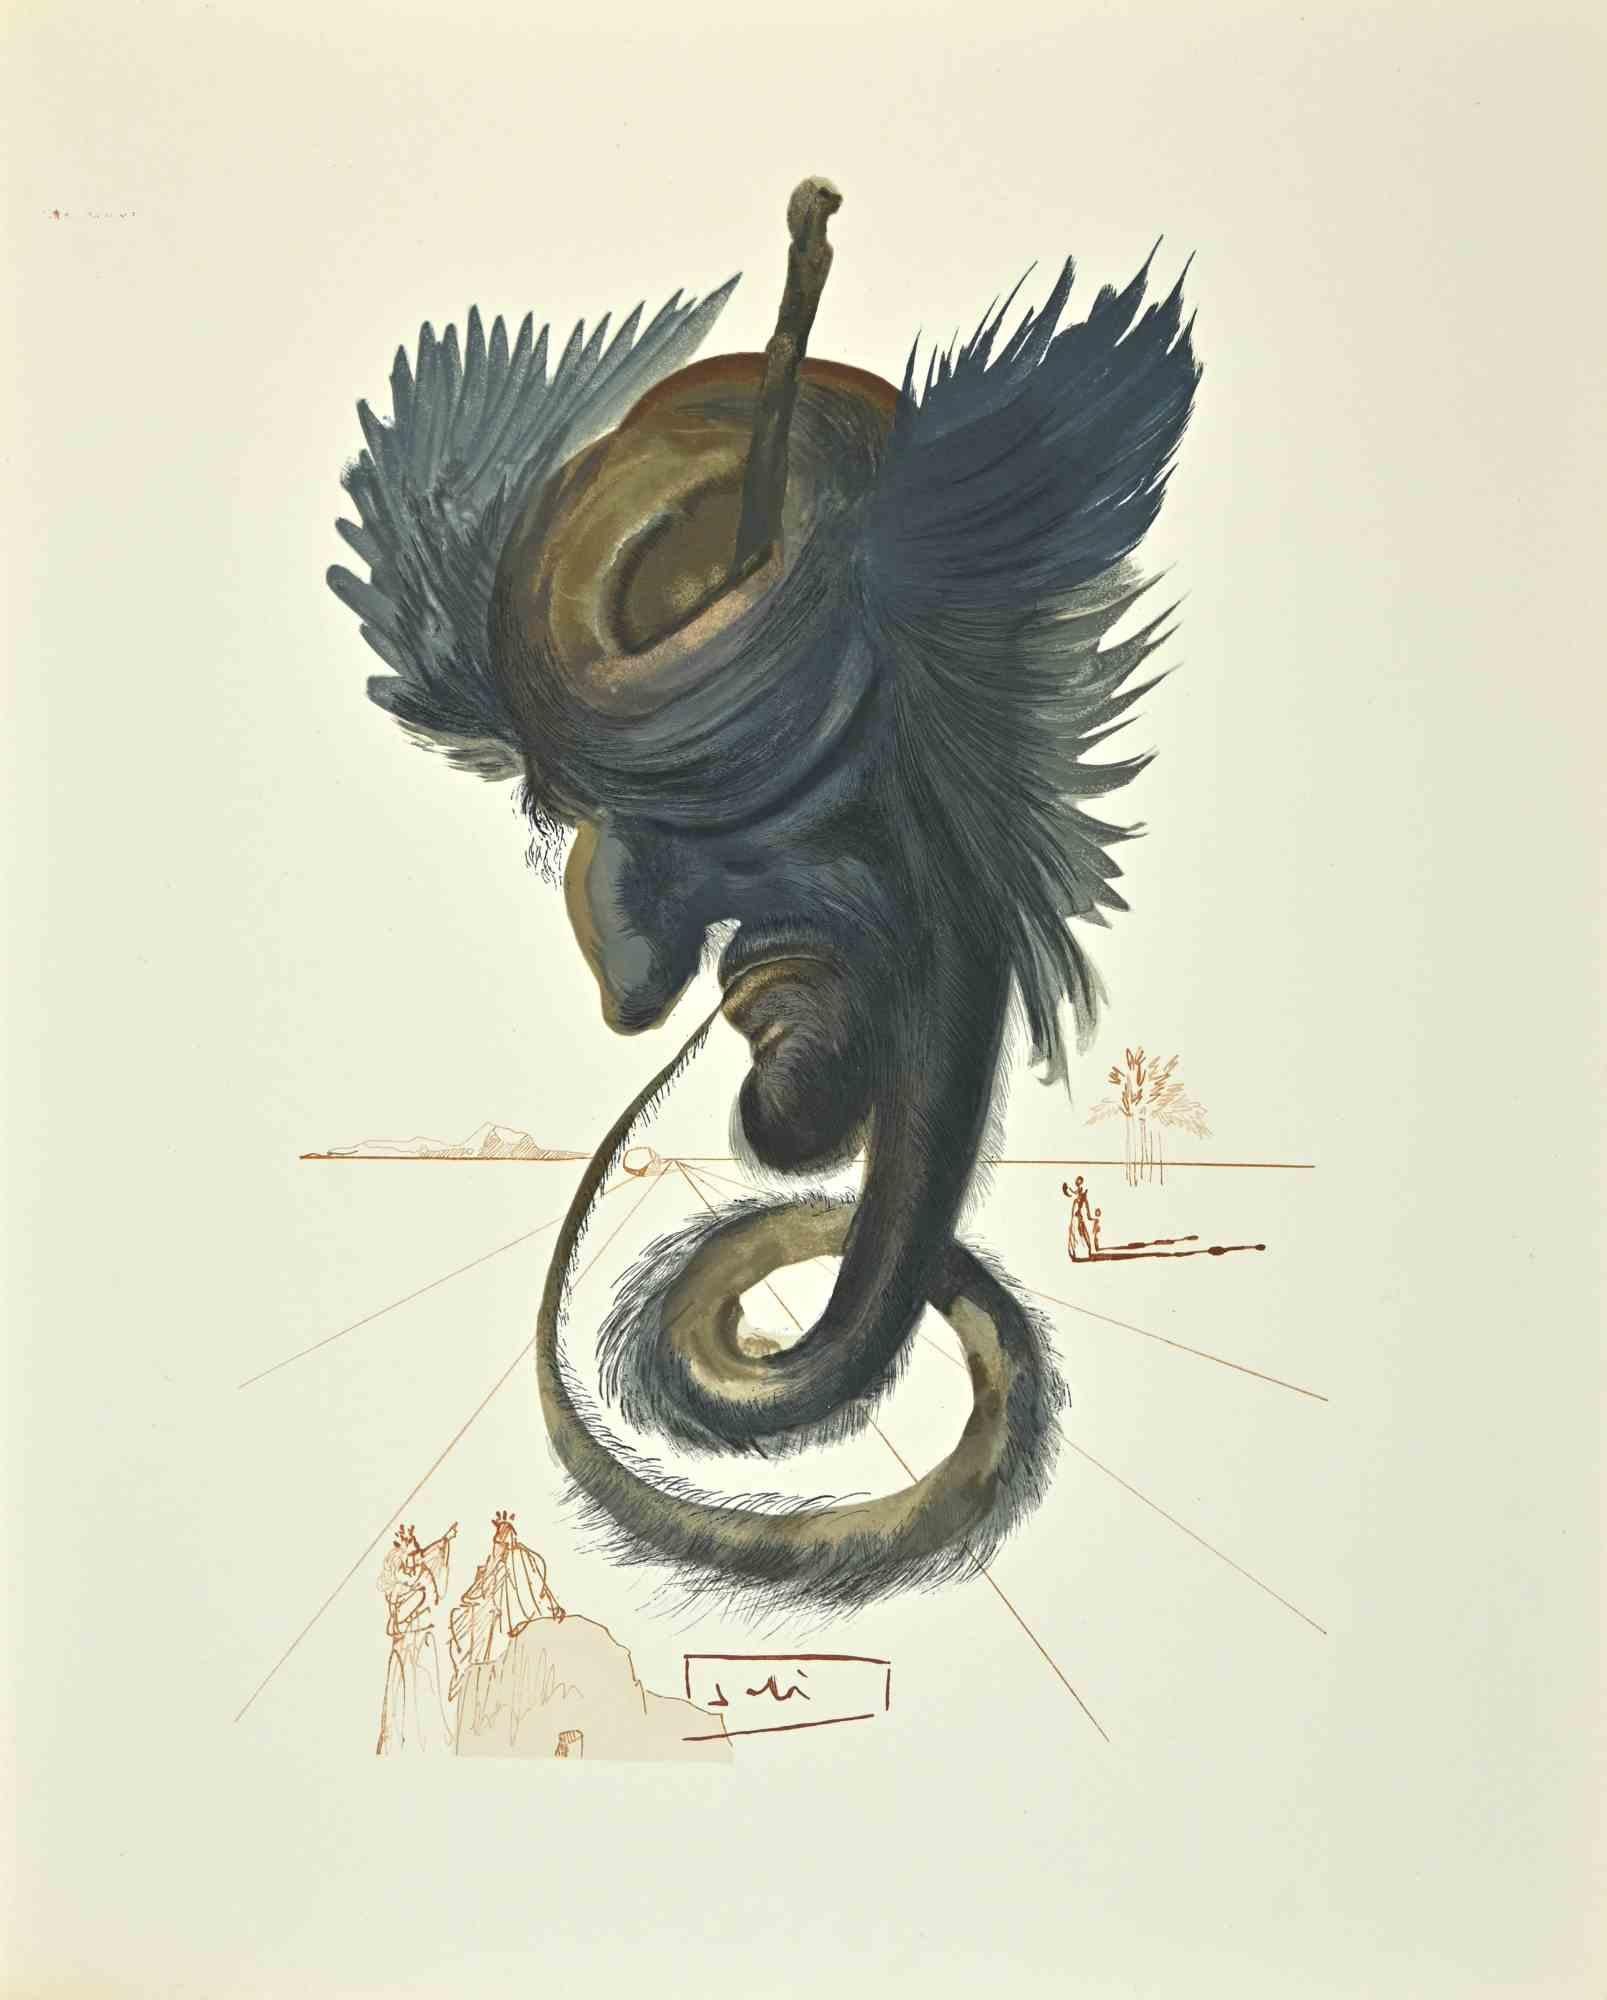 Salvador Dalí Print - The Black Cherub - Woodcut print - 1963